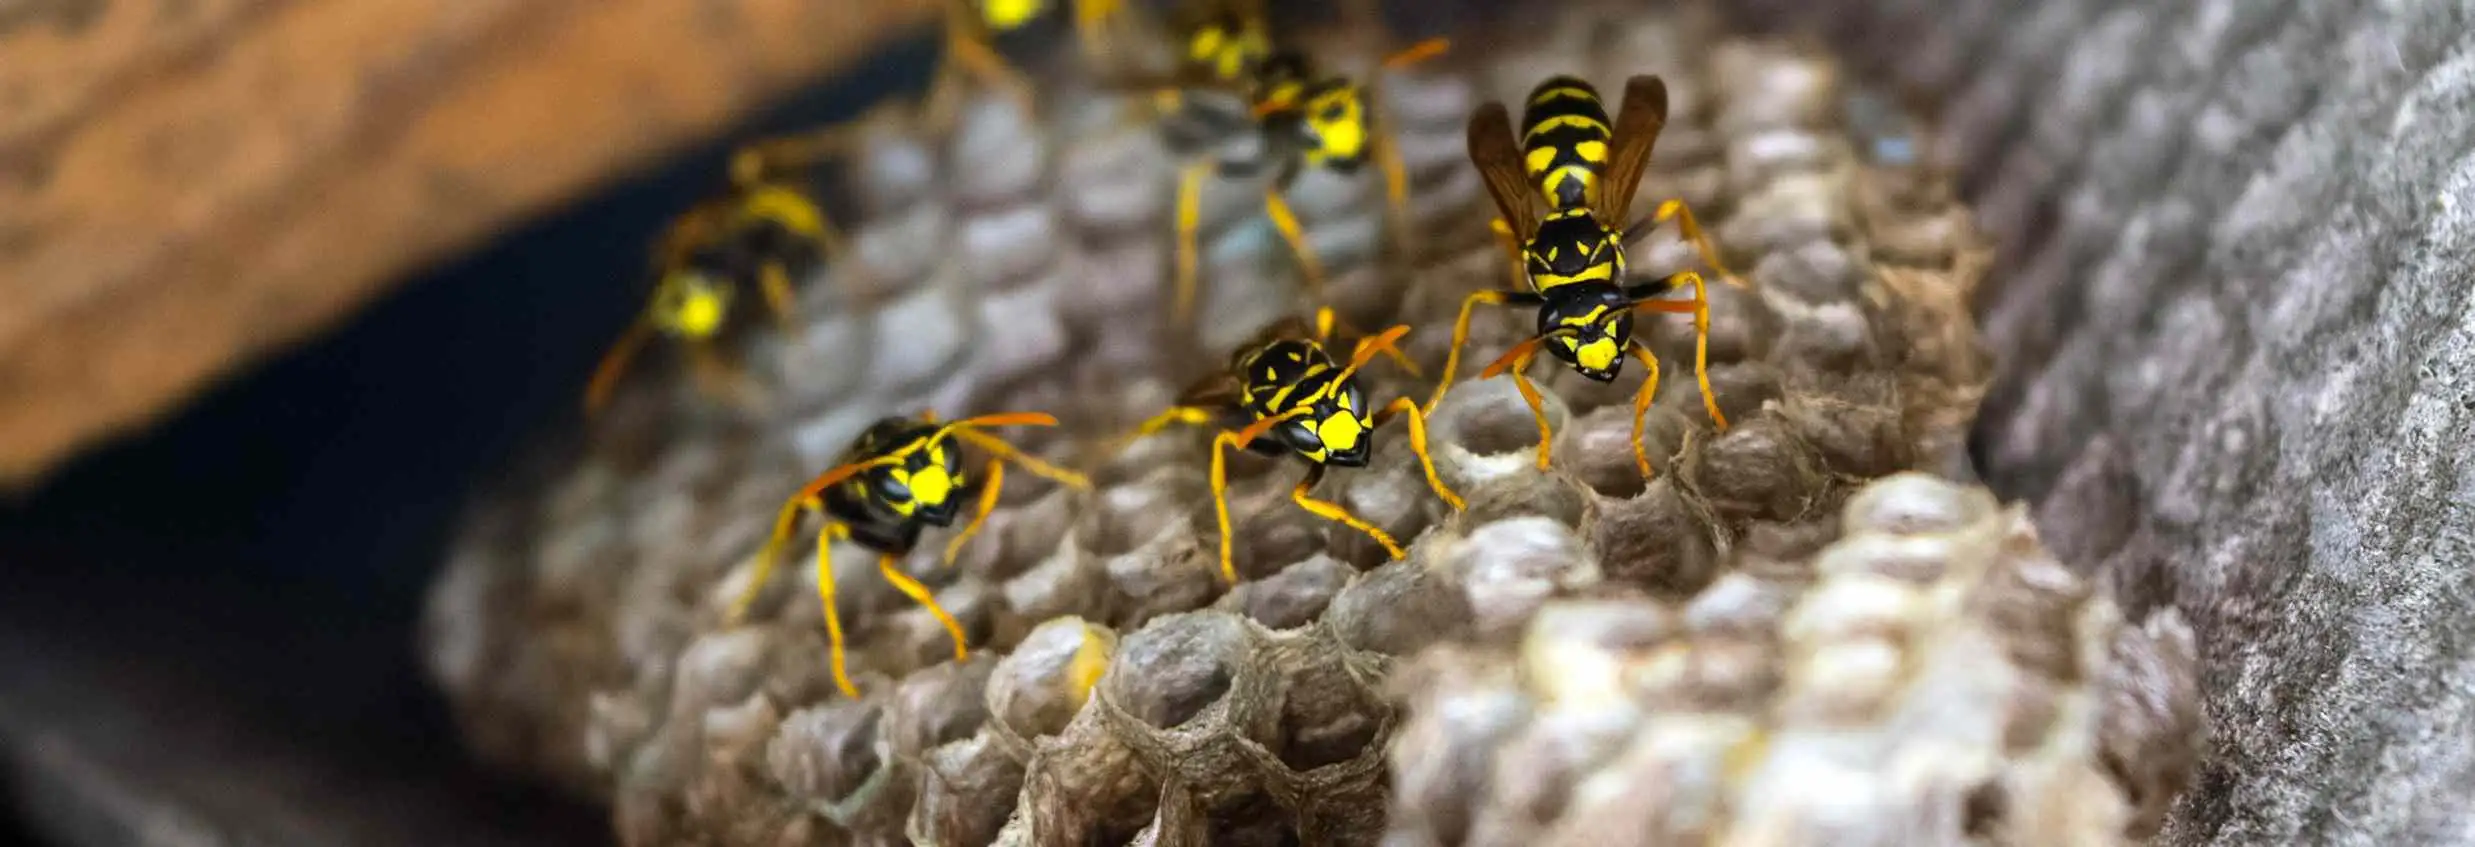 Wist je dat: een wespennest uit wel 5.000 wespen kan bestaan?